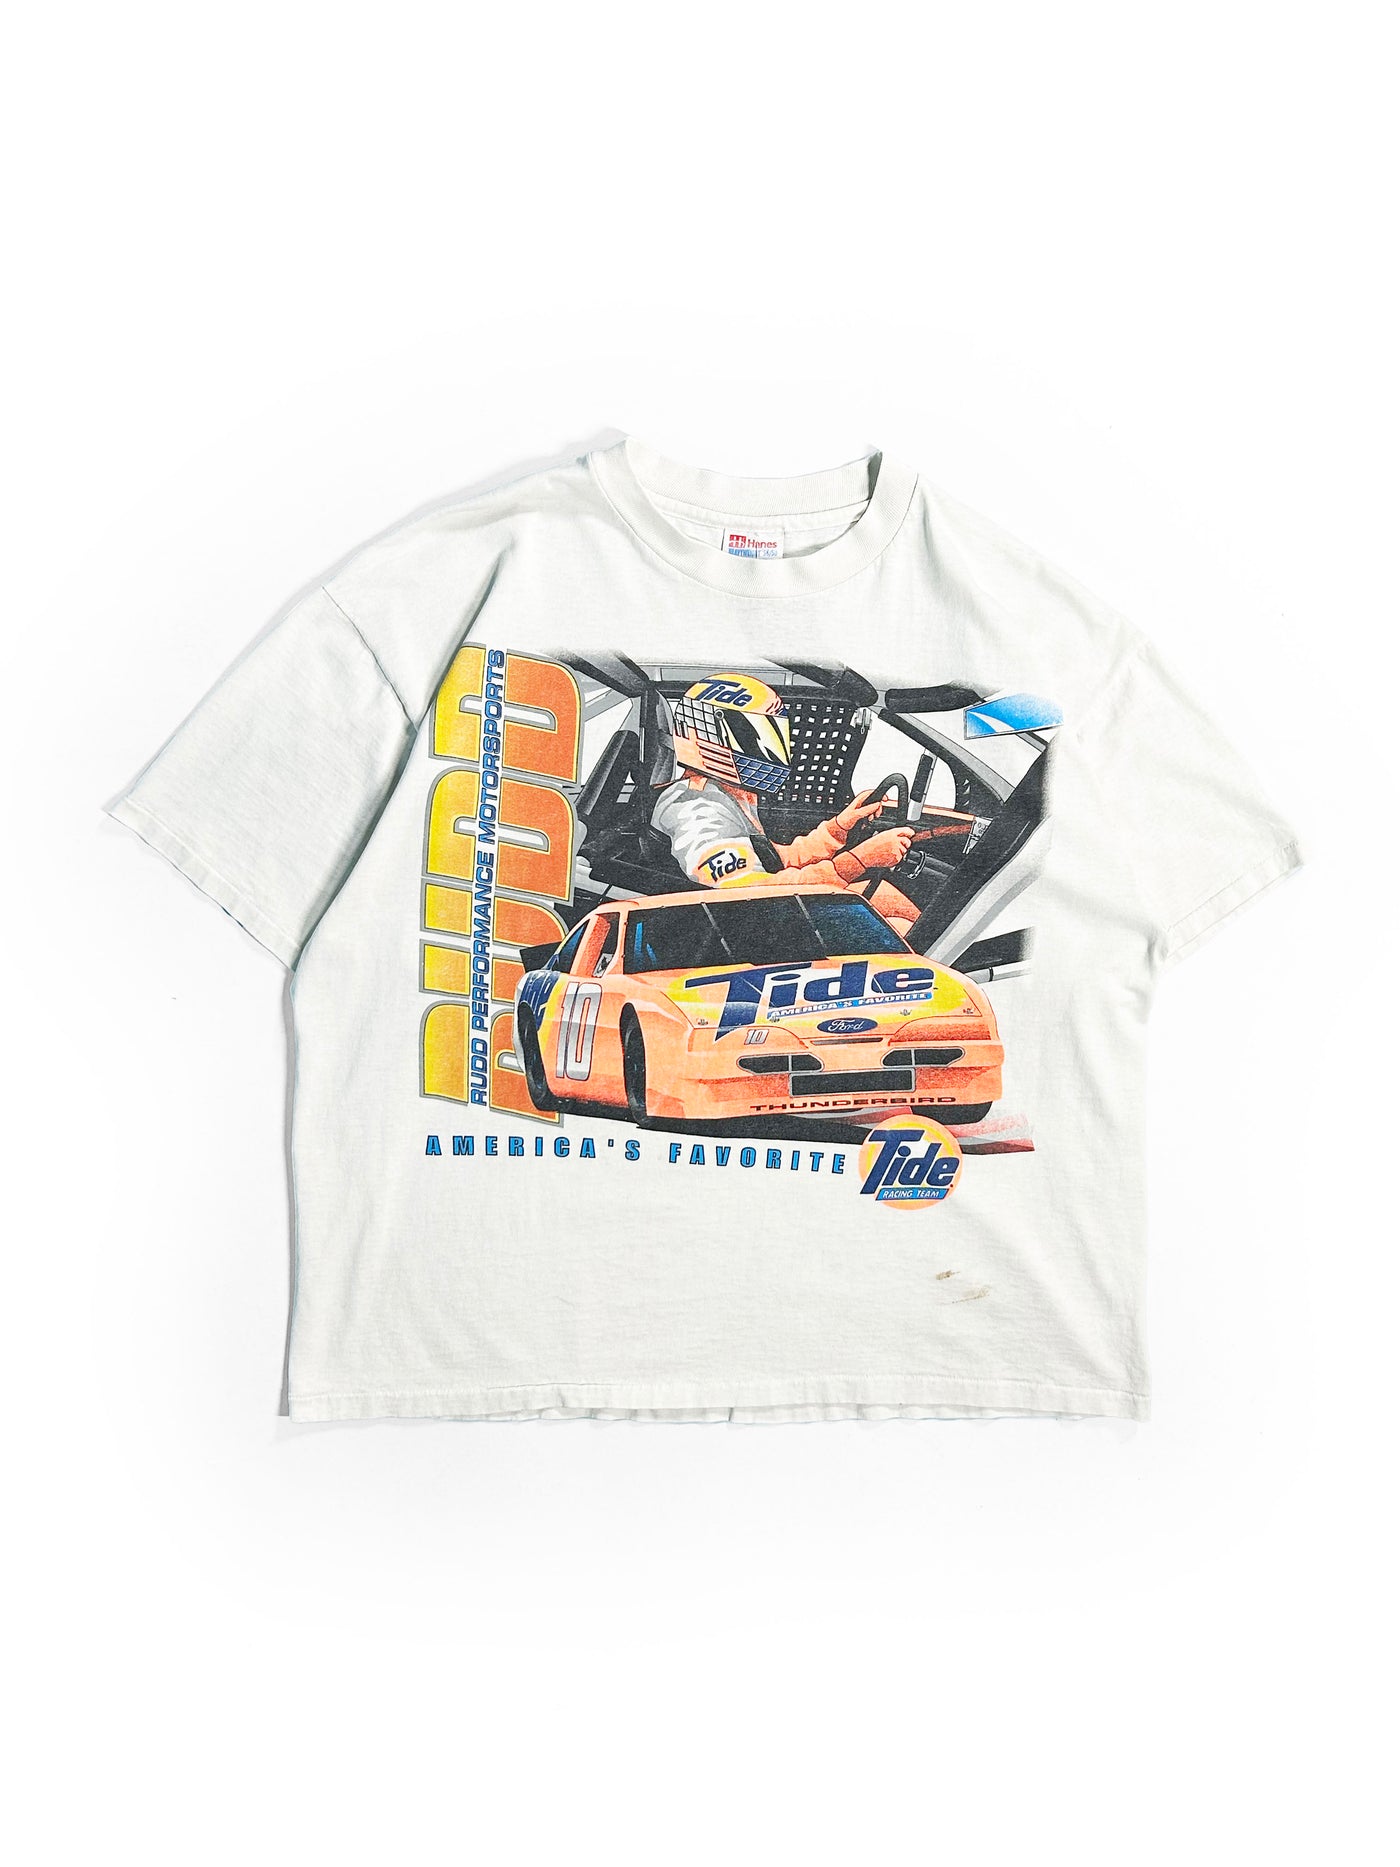 Vintage 90s Tide Racing Nascar T-Shirt